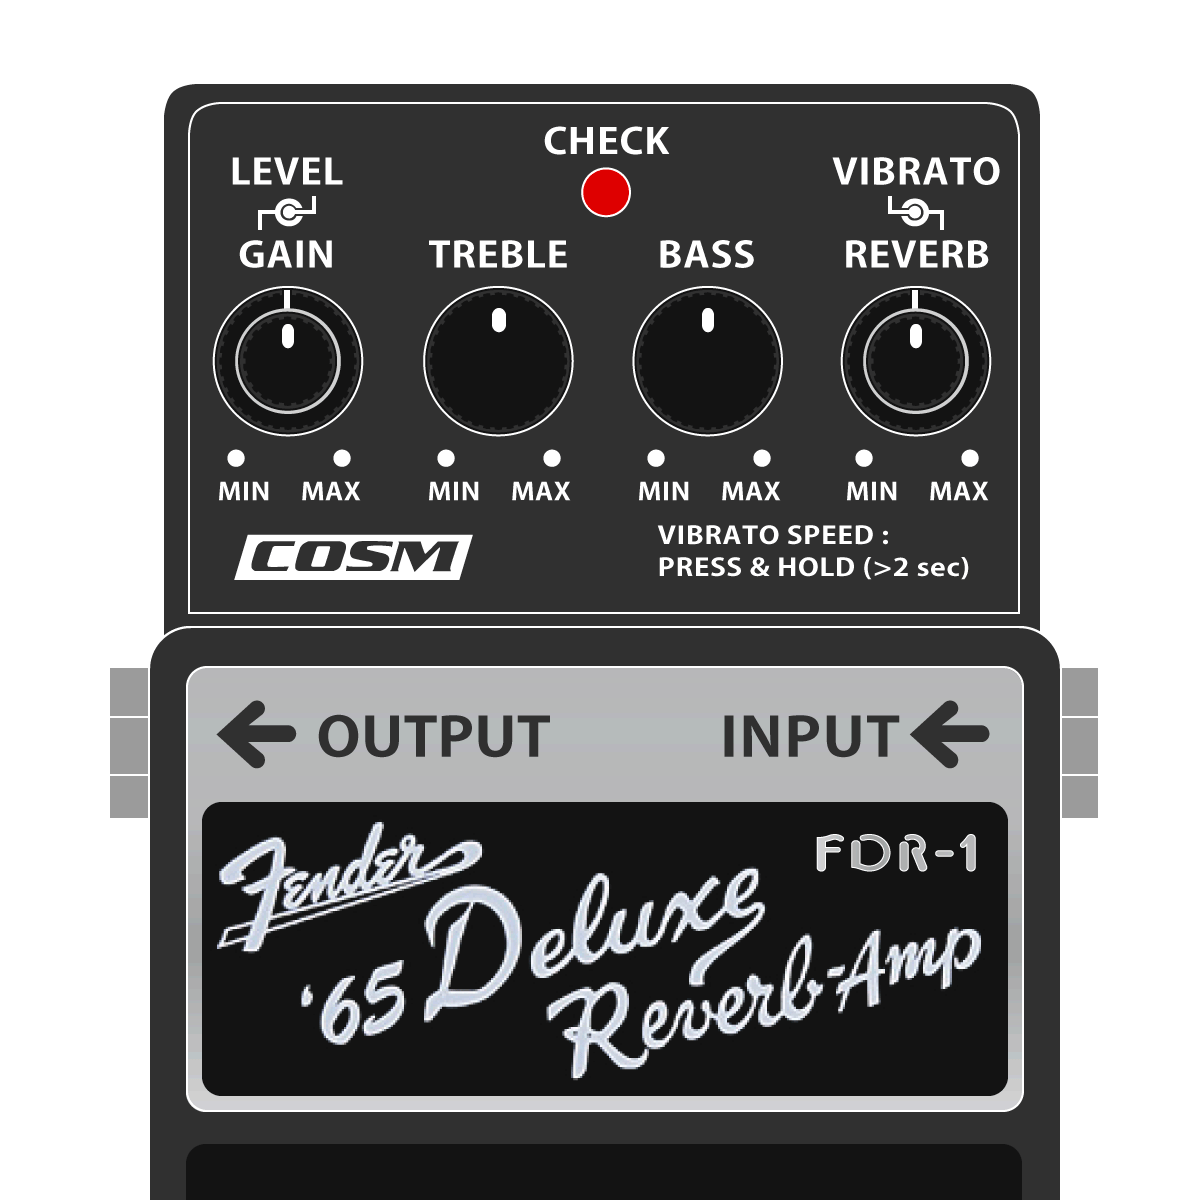 FDR-1 Fender '65 Deluxe Reverb Amp（BOSSレジェンドシリーズ